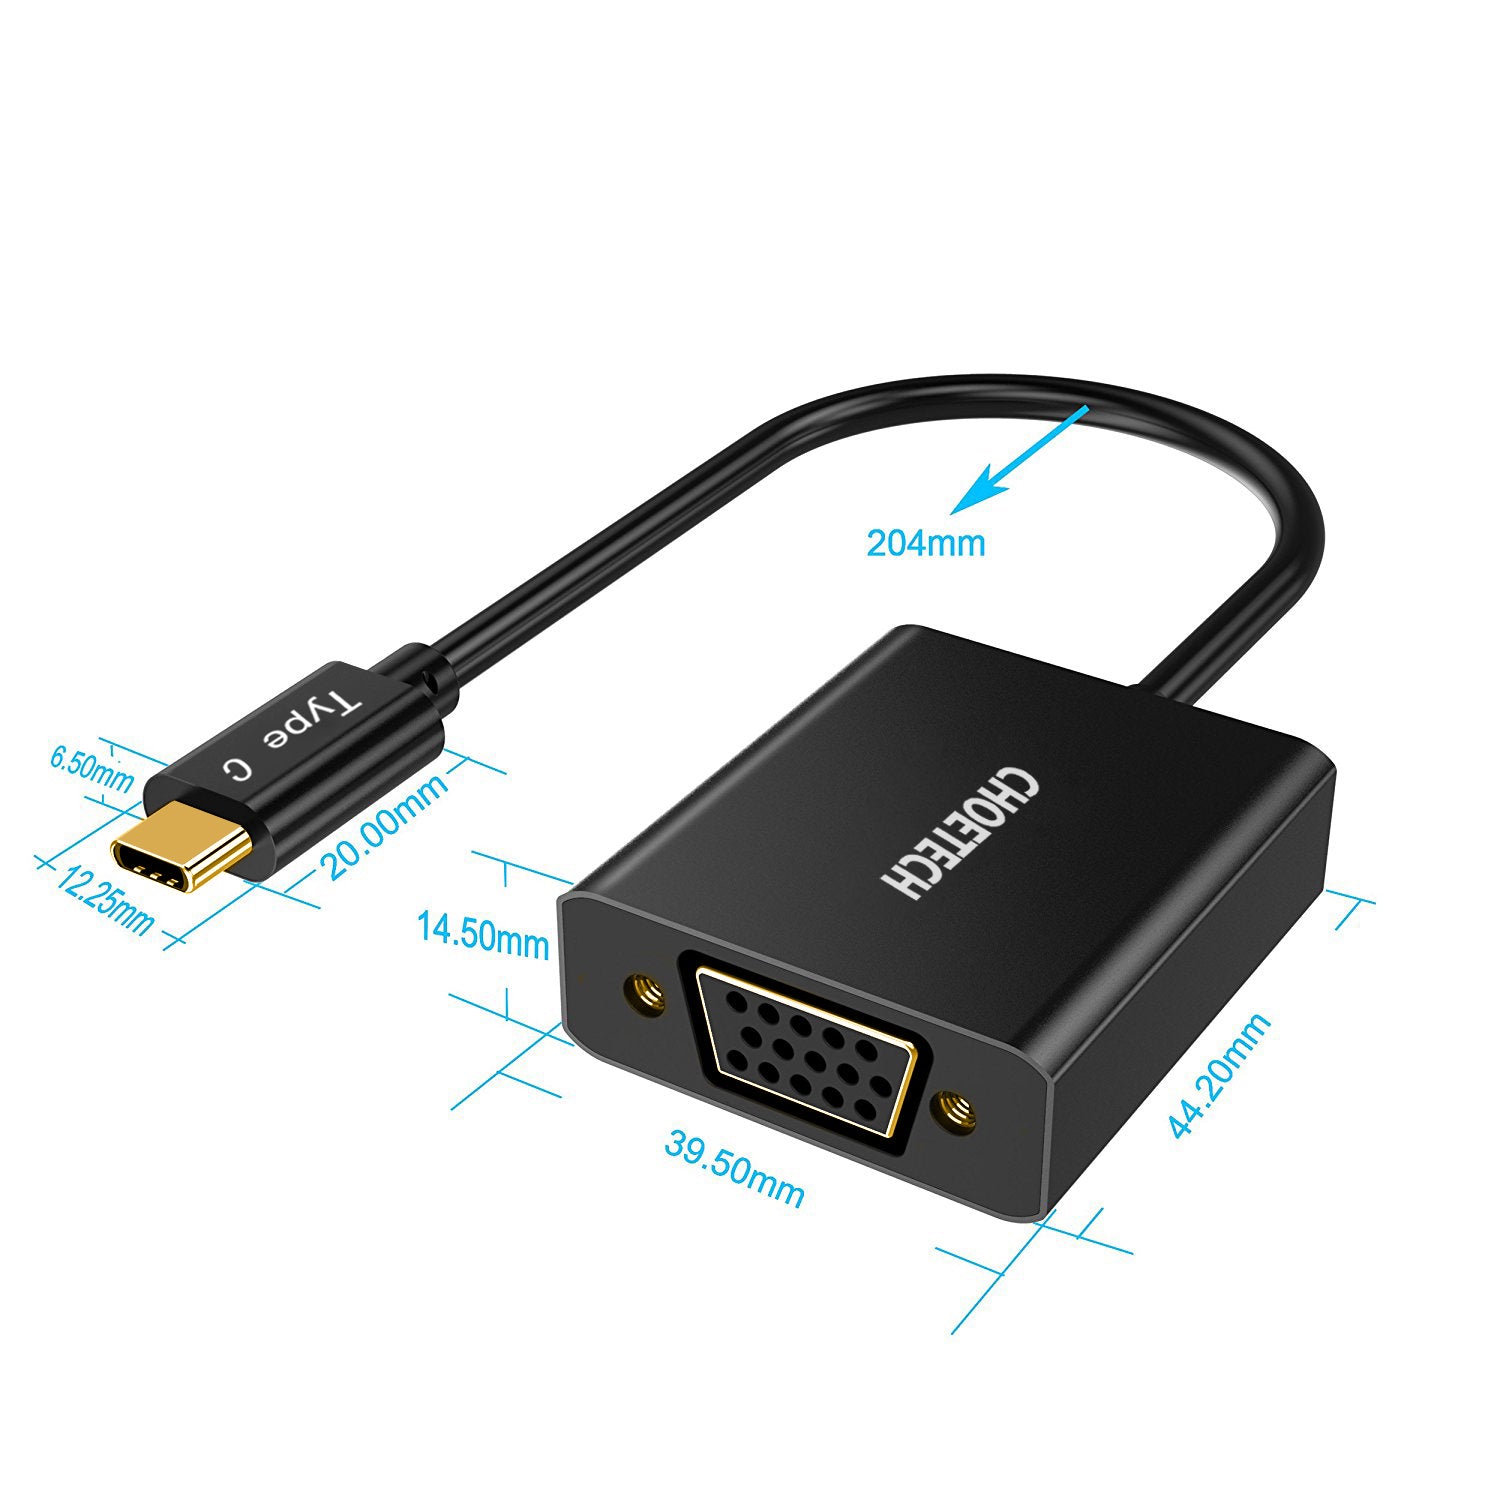 HUB-V01 Choetech 1080p unterstützt USB 3.1 USB Type-C auf VGA Adapter (Thunderbolt 3 Port kompatibel) für MacBook, Chromebook Pixel und weitere Type-C Geräte